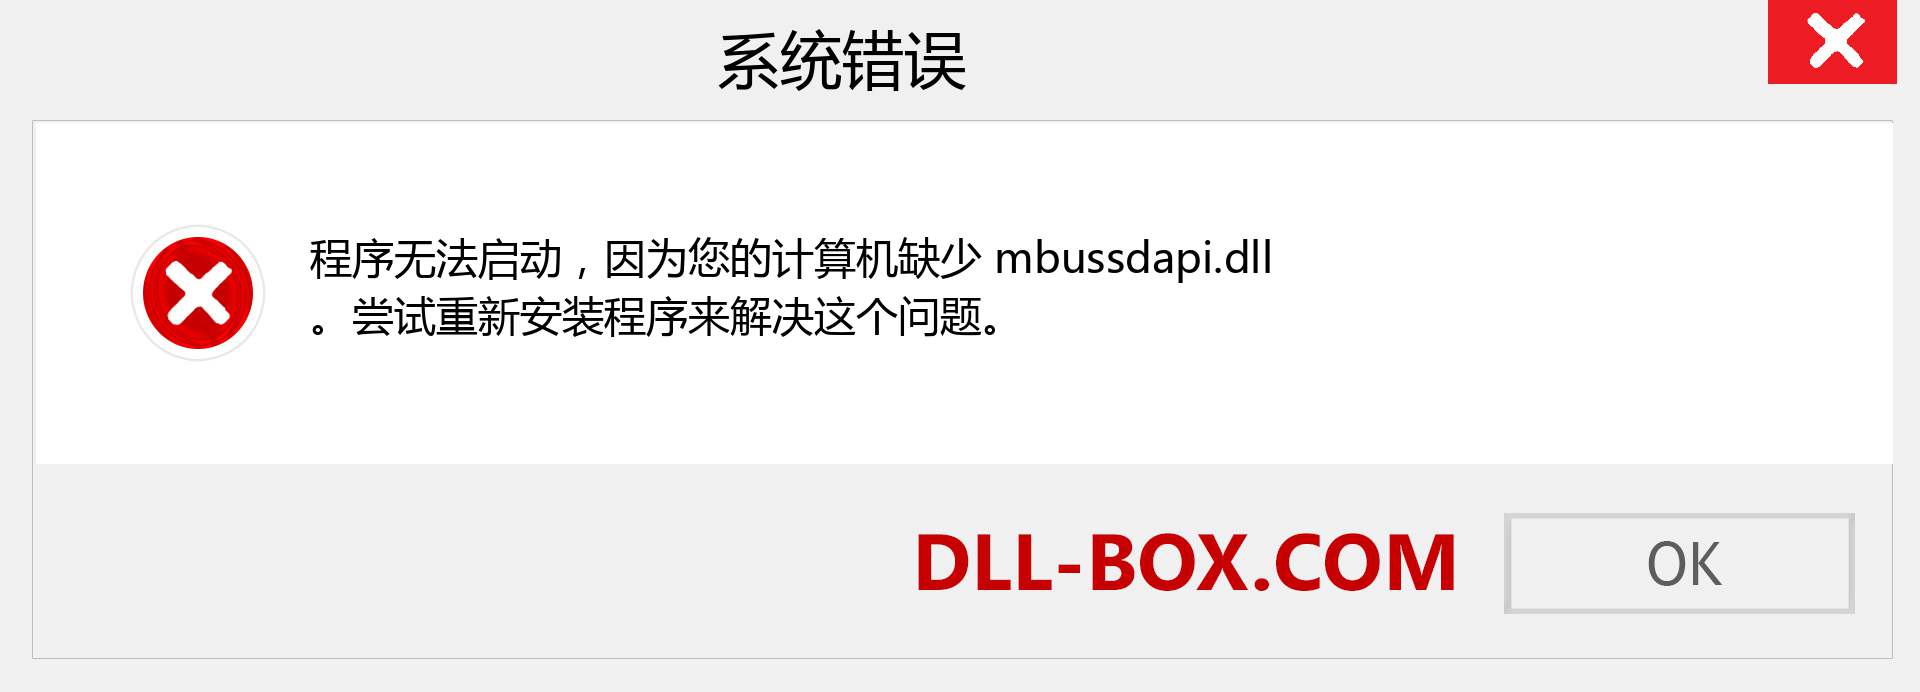 mbussdapi.dll 文件丢失？。 适用于 Windows 7、8、10 的下载 - 修复 Windows、照片、图像上的 mbussdapi dll 丢失错误